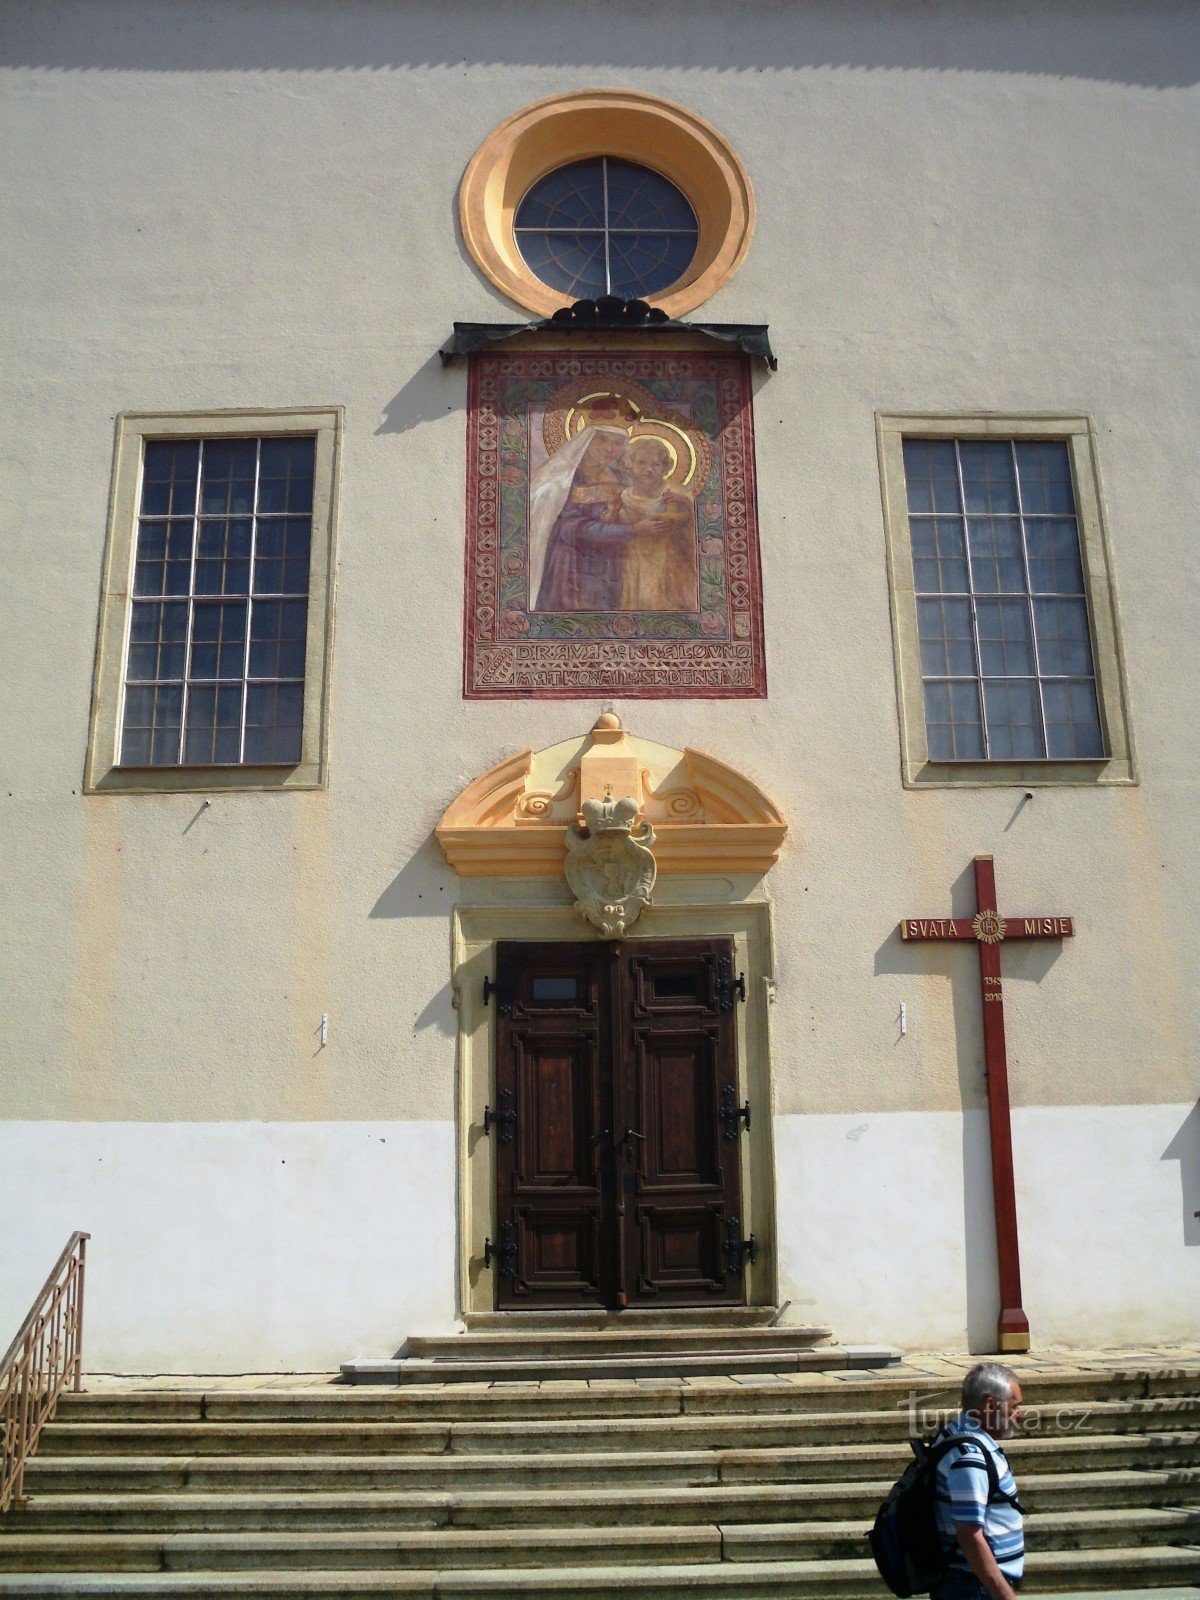 Kyjov - Iglesia de la Asunción de la Virgen María y los Santos Cirilo y Metodio